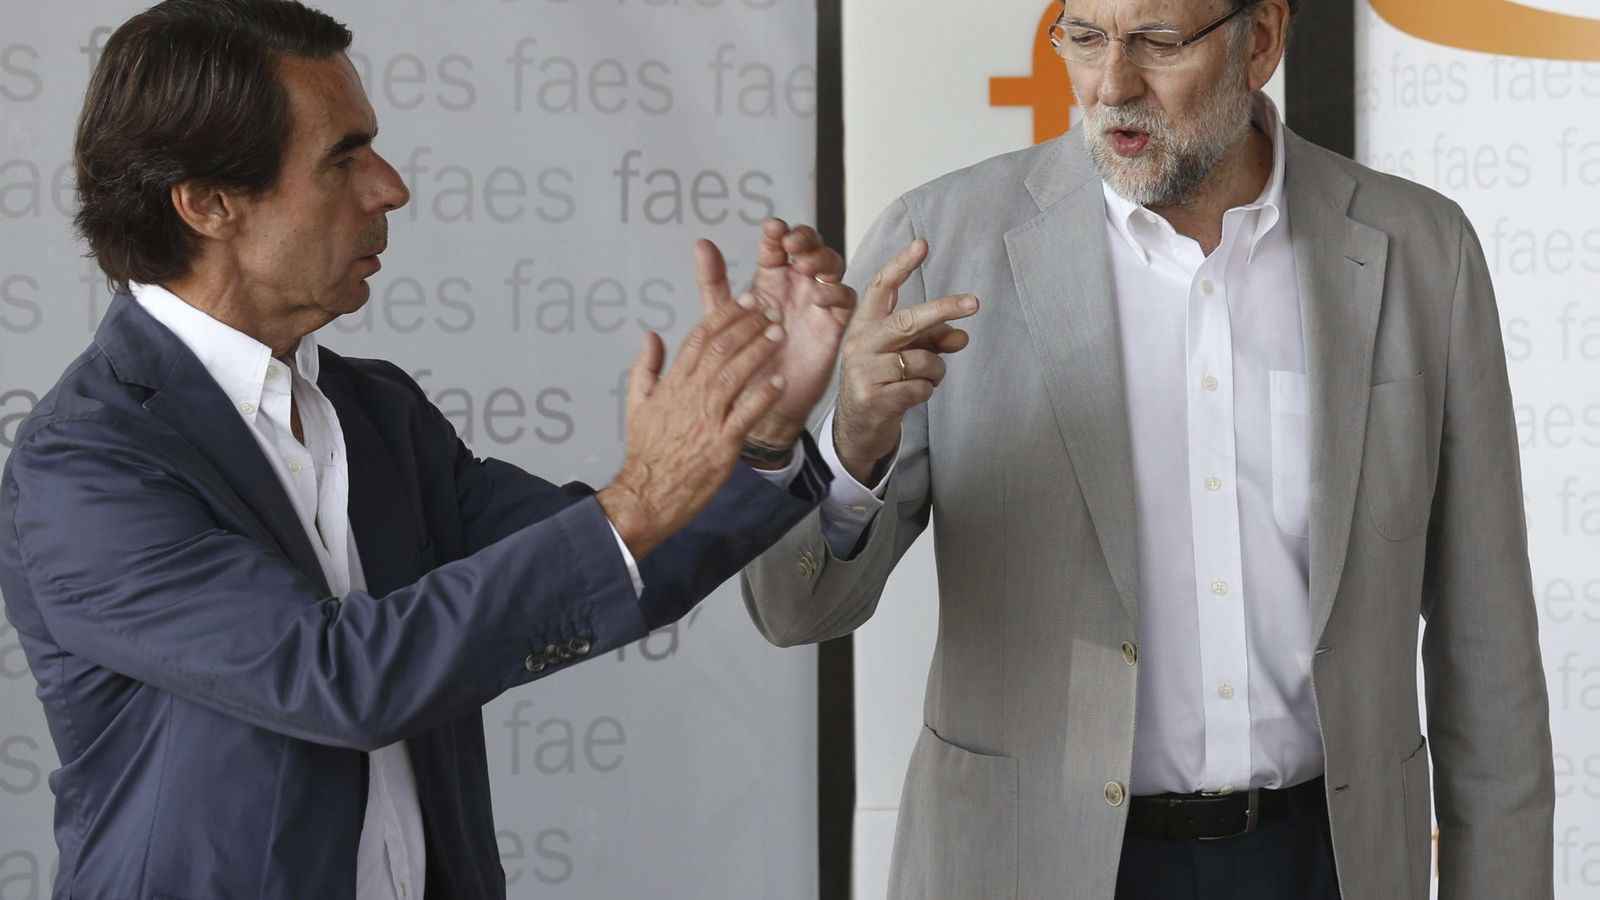 Foto: Foto de archivo del expresidente del Gobierno, José María Aznar junto al presidente actual Mariano Rajoy. (EFE)